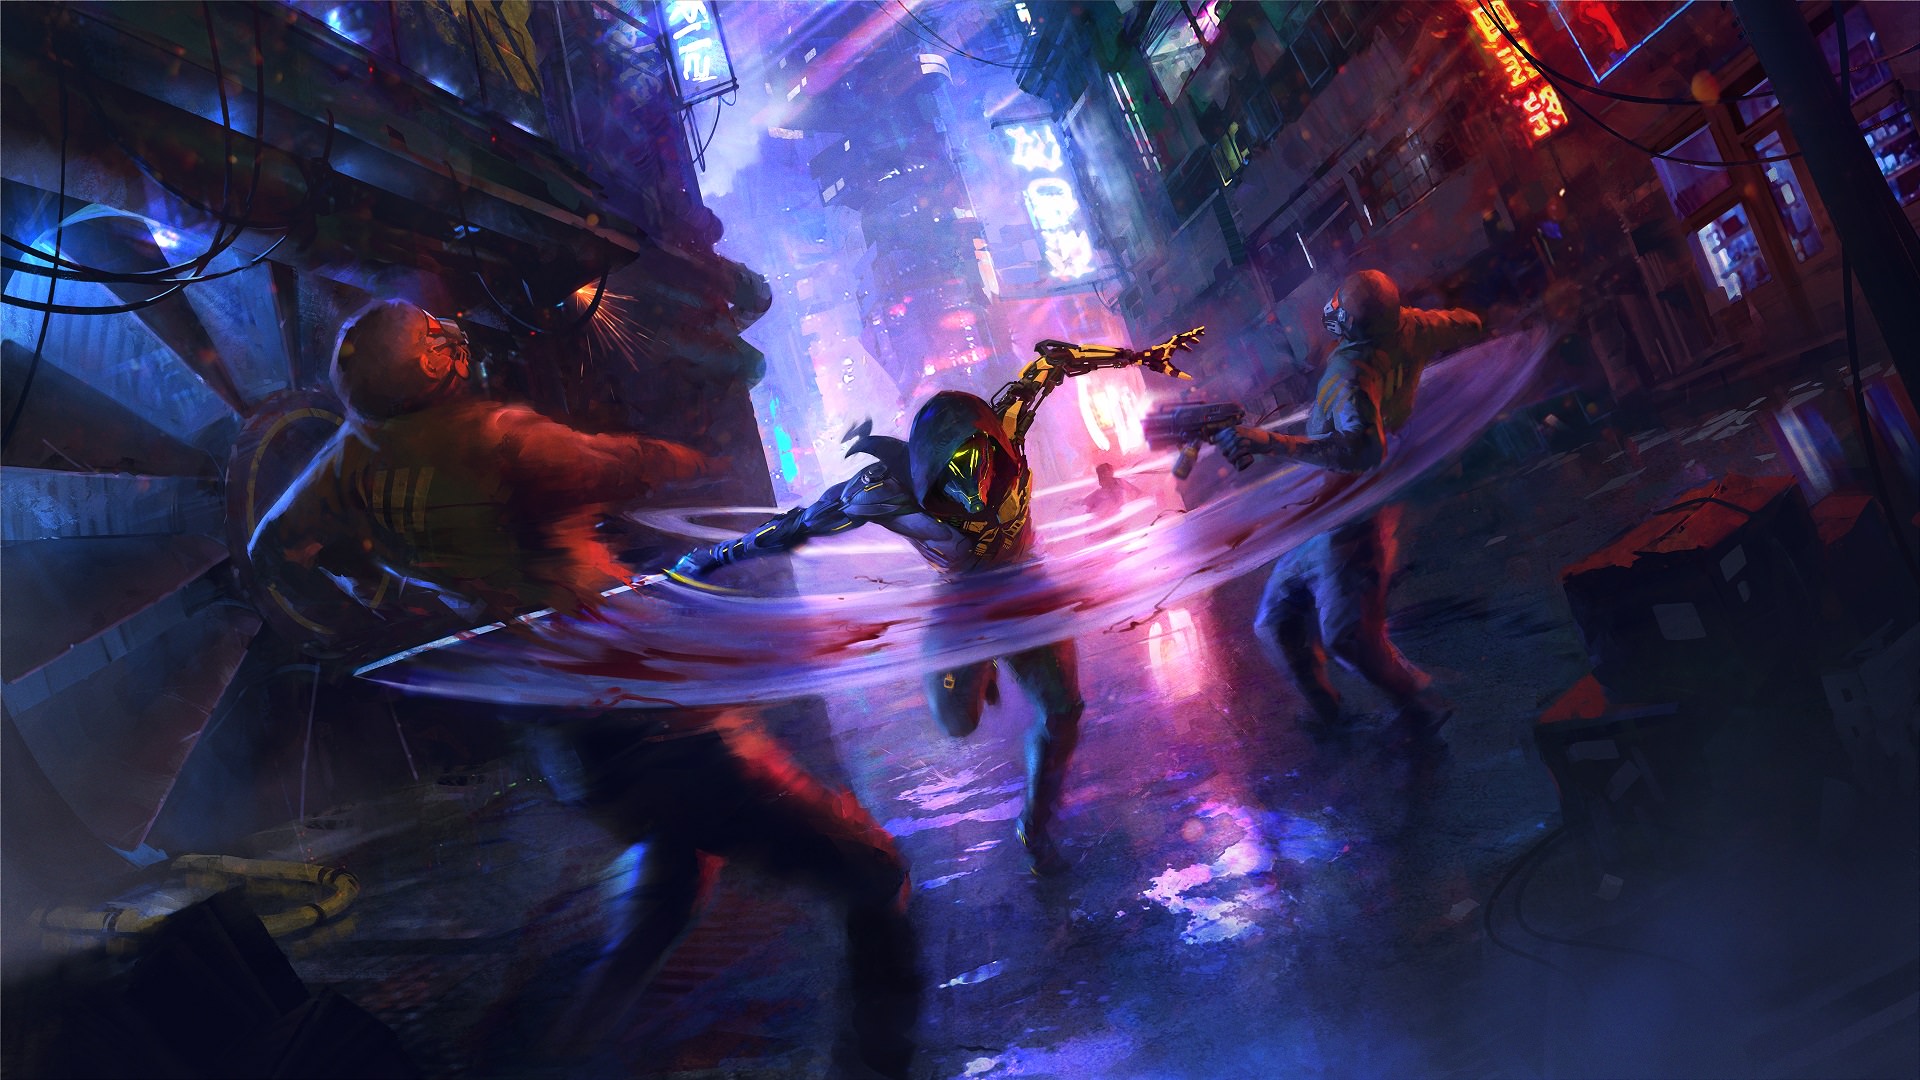 تریلر جدید بازی Ghostrunner 2 با محوریت نظر منتقدها